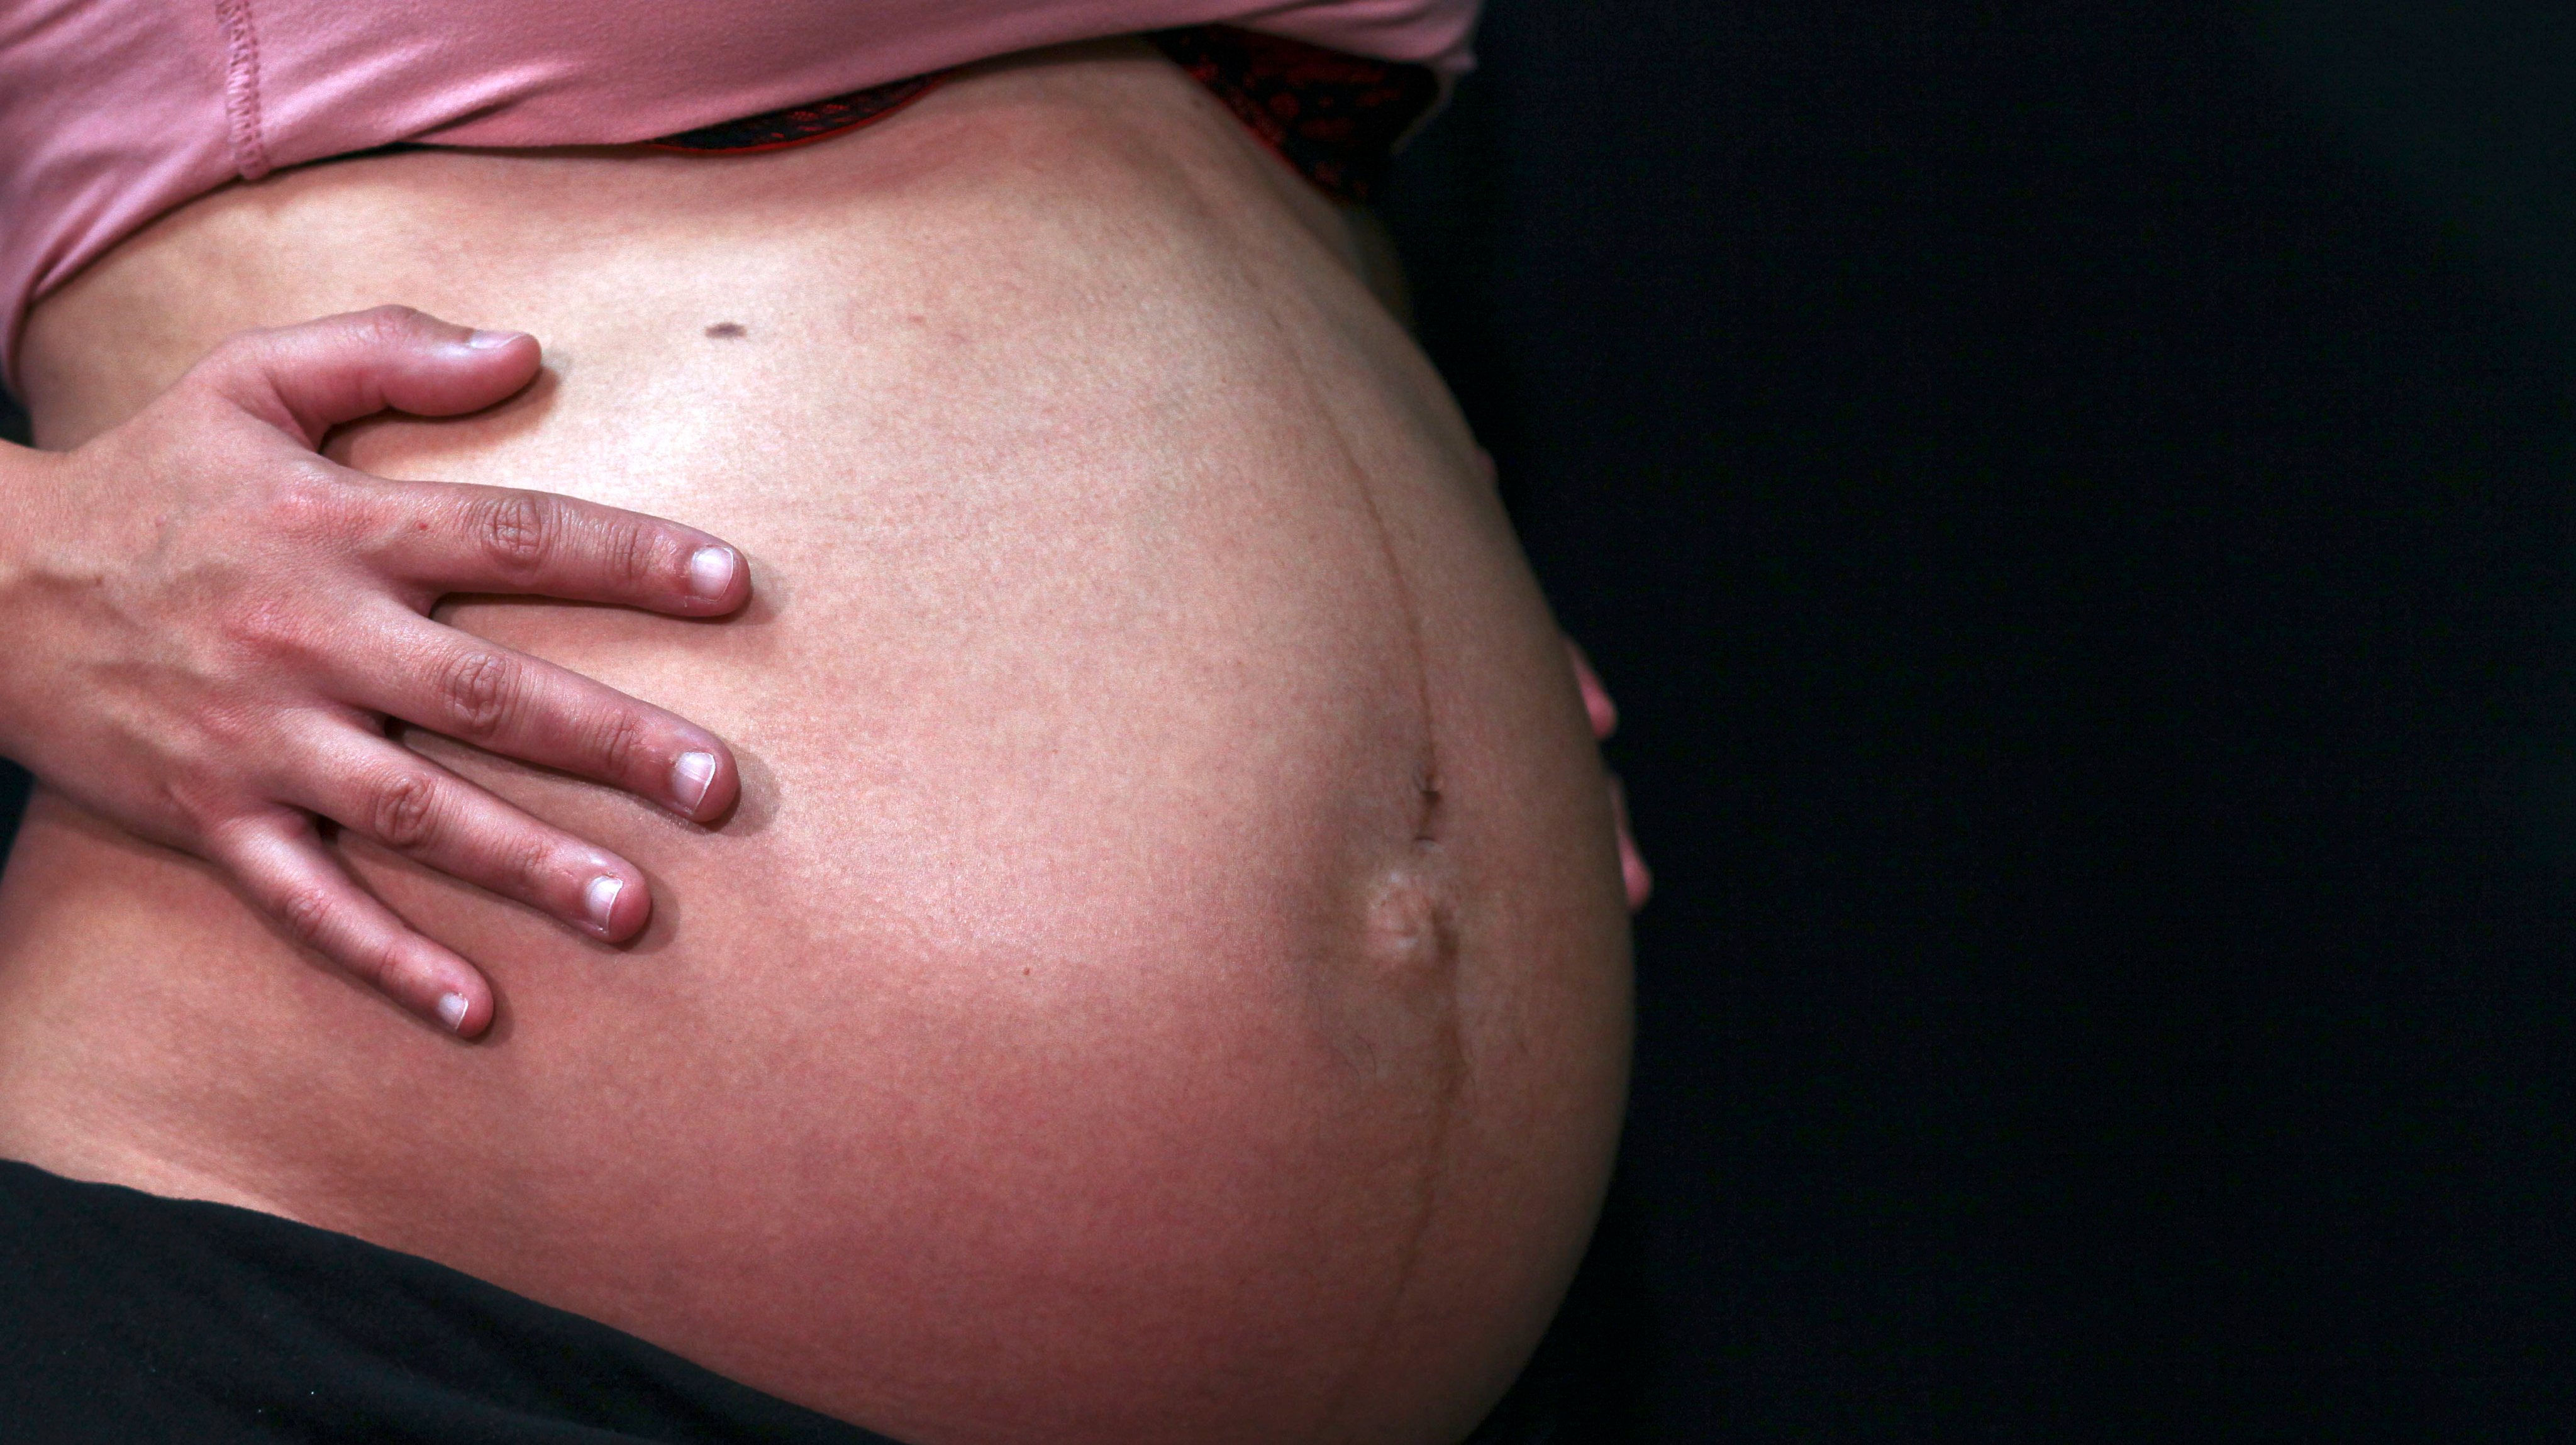 O parto é um processo altamente complicado que envolve sinais bioquímicos e fisiológicos coordenados